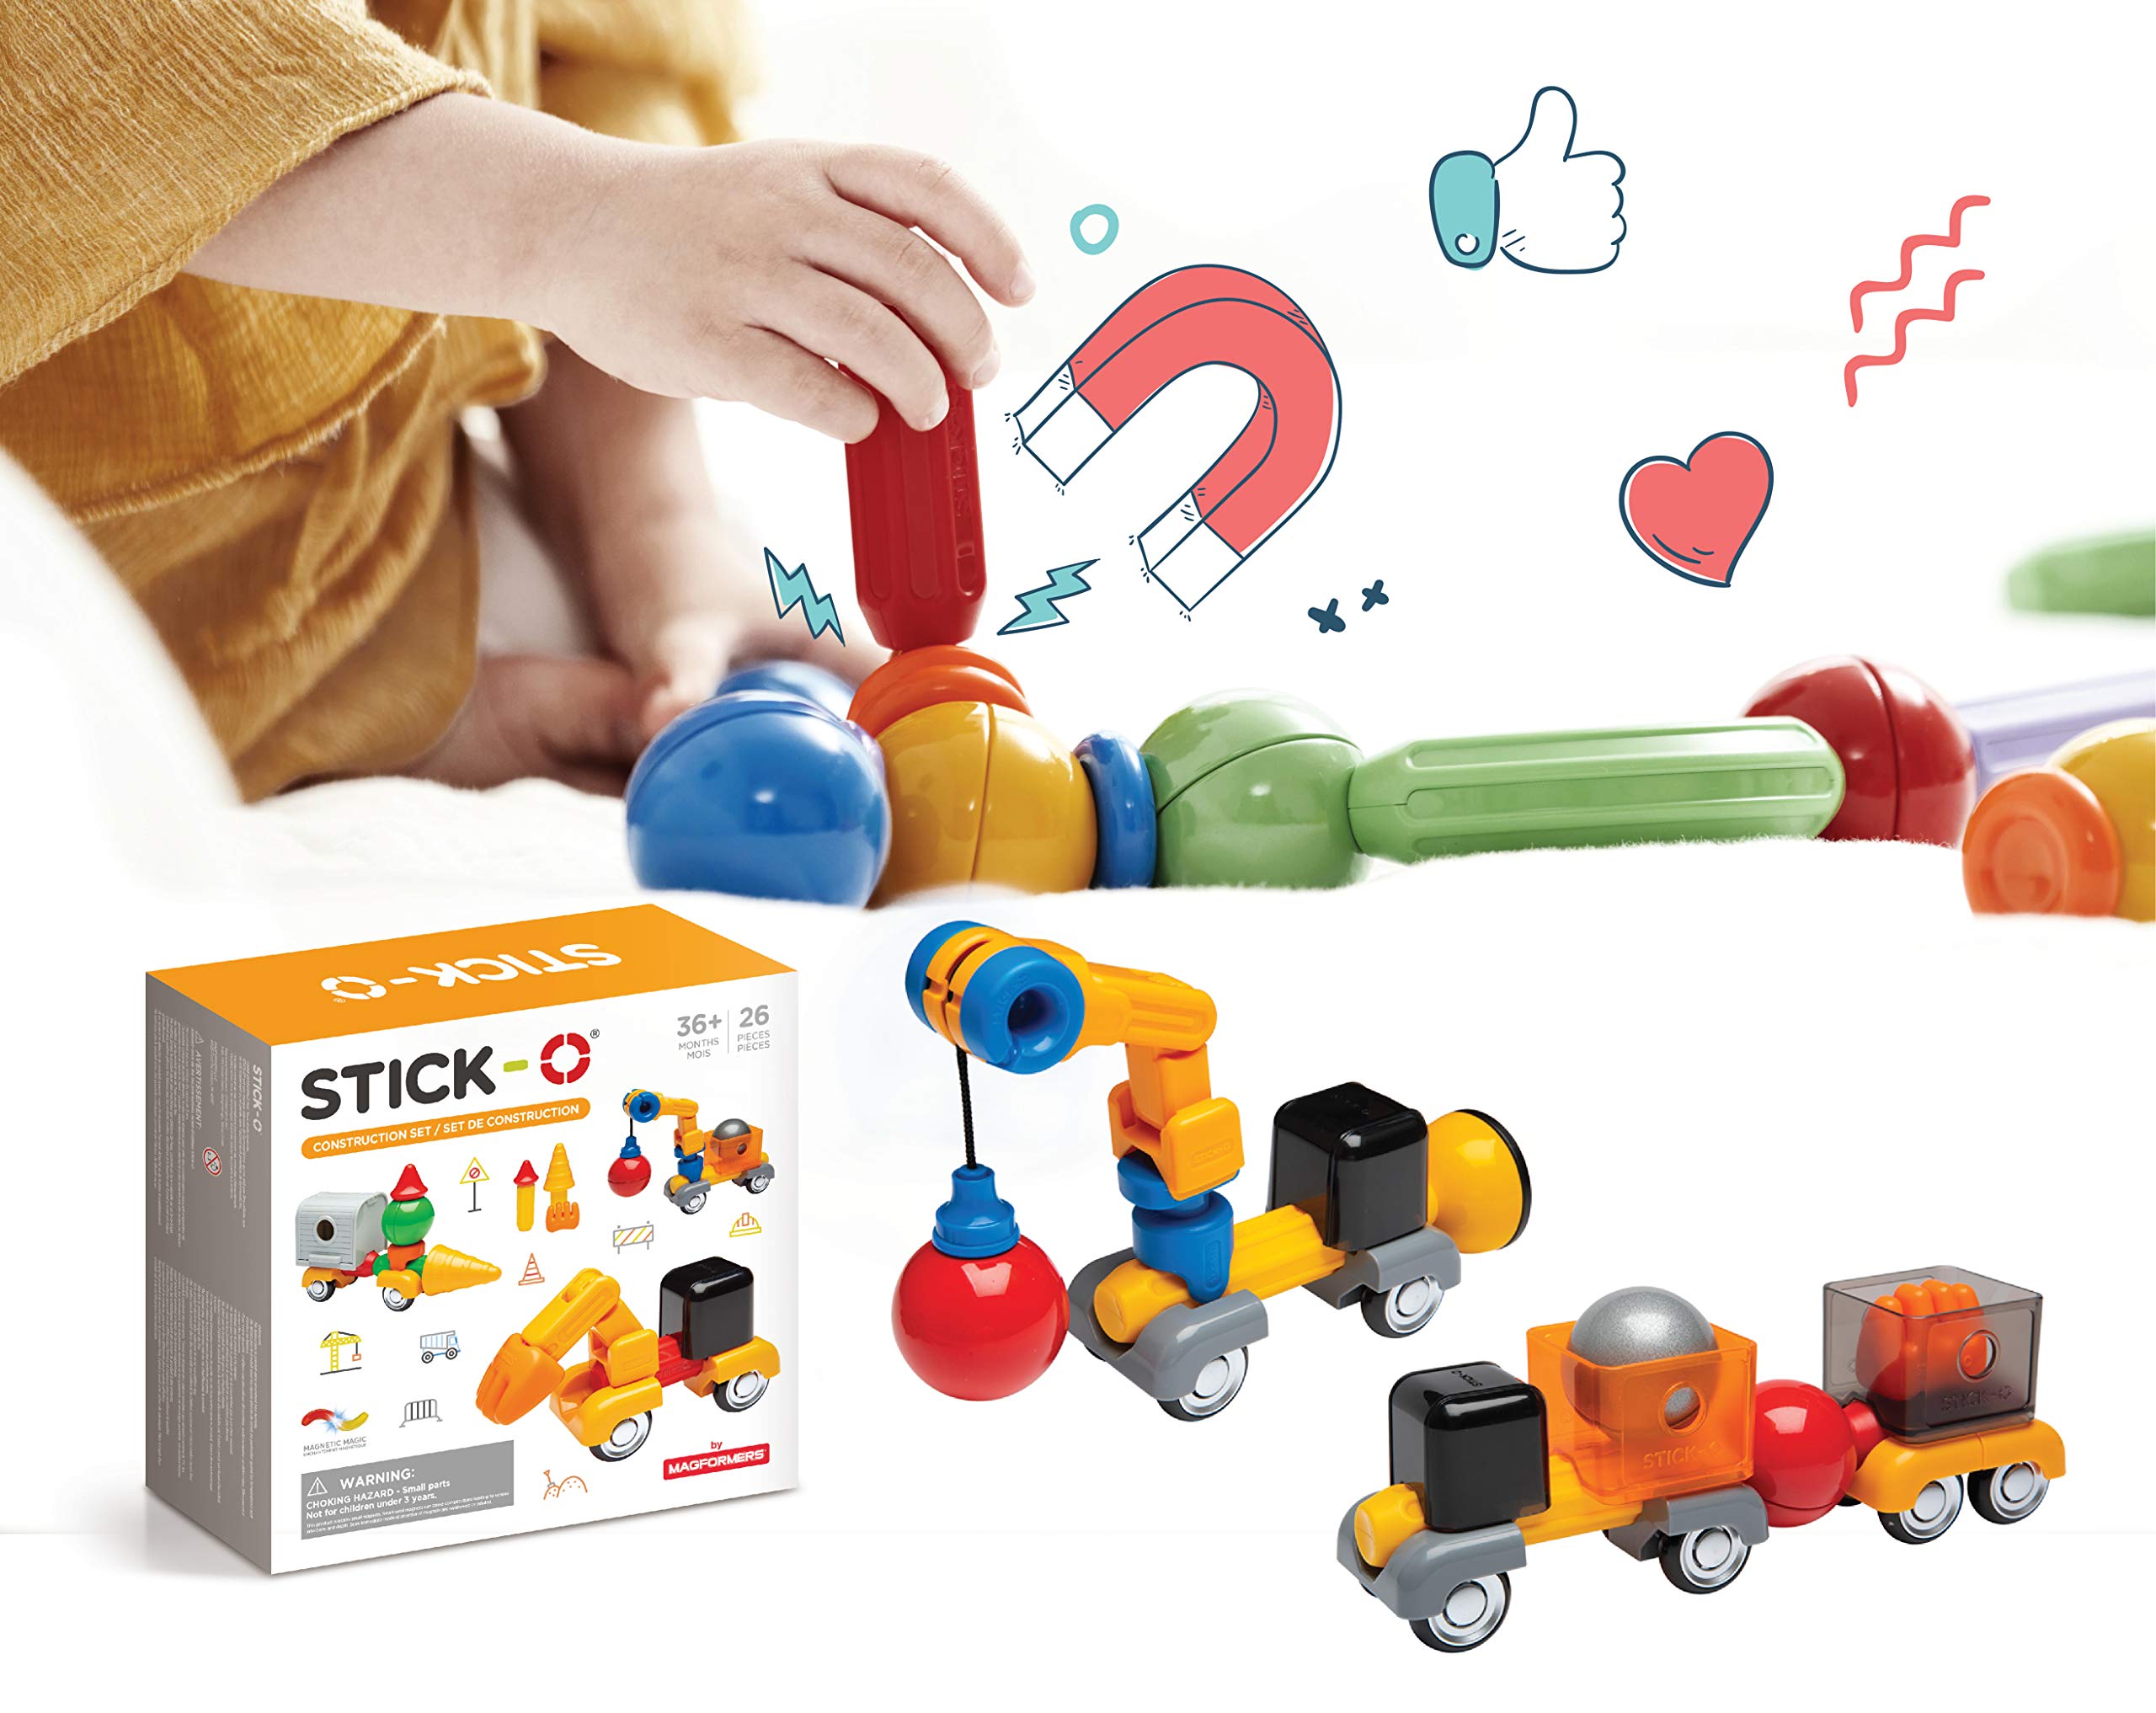 Stick-O magnetische Bausteine für Kinder ab 3 Jahre, kreatives Konstruktionsspielzeug, Lernspielzeug mit Magnet, Baustellen Set für Mädchen und Jungen, Montessori Spielzeug, 26 Teile Set,